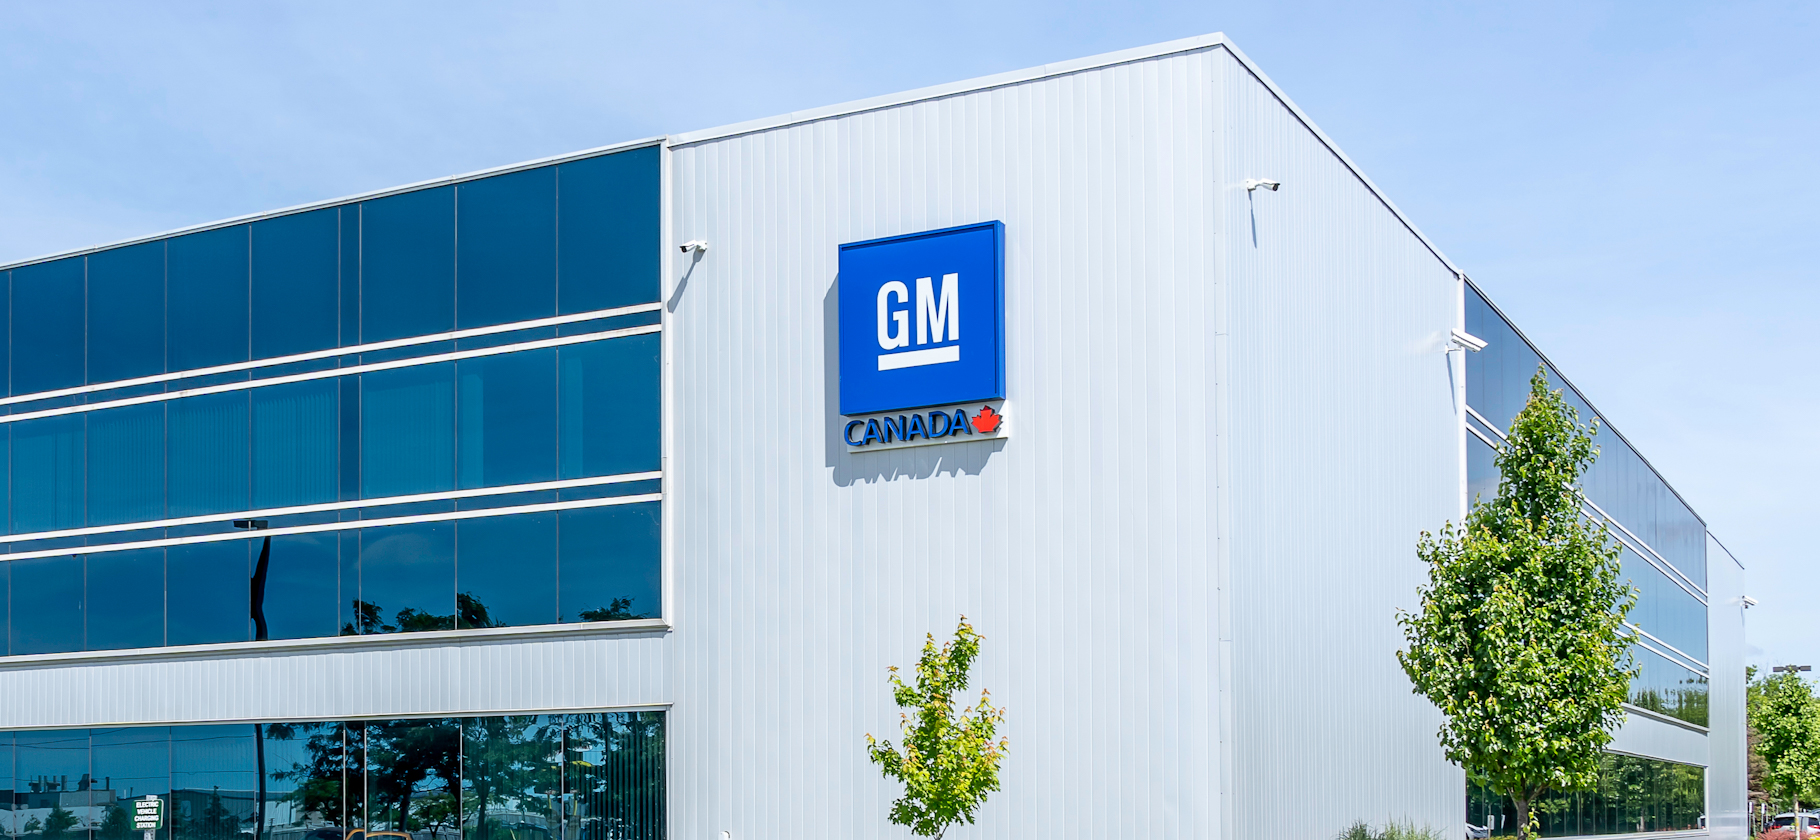 GM планирует удвоить выручку к 2030 году за счет электрокаров и подписок